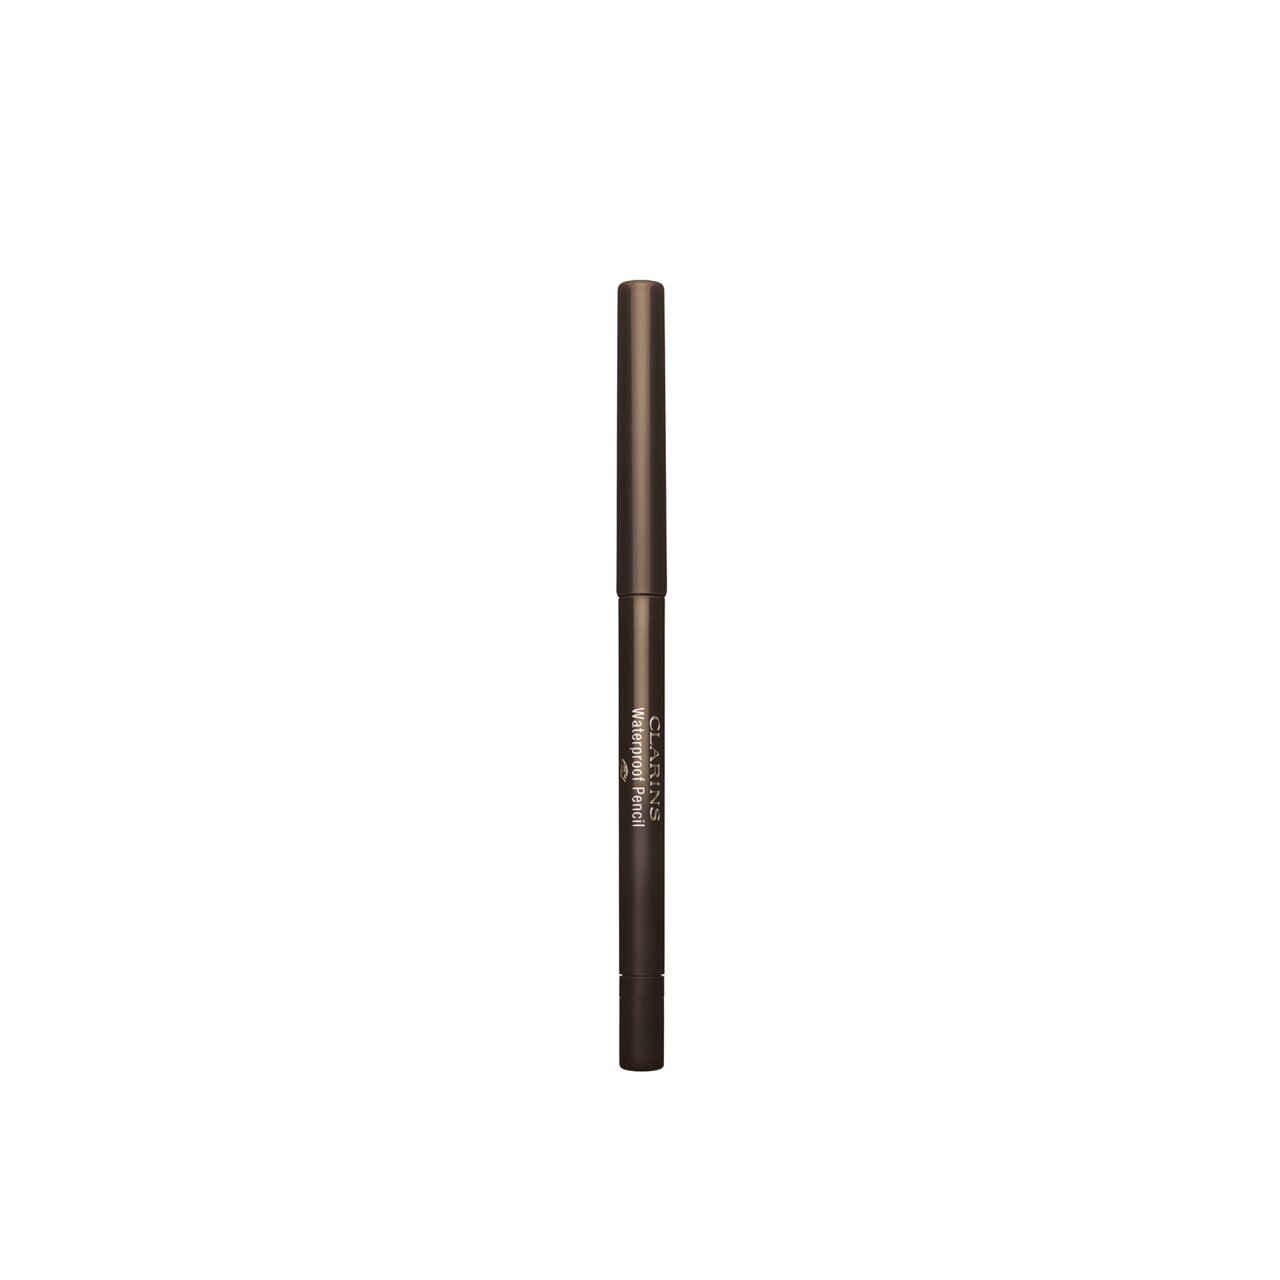 Clarins Waterproof Pencil Long-Lasting Eyeliner 02 Chestnut 0.29g